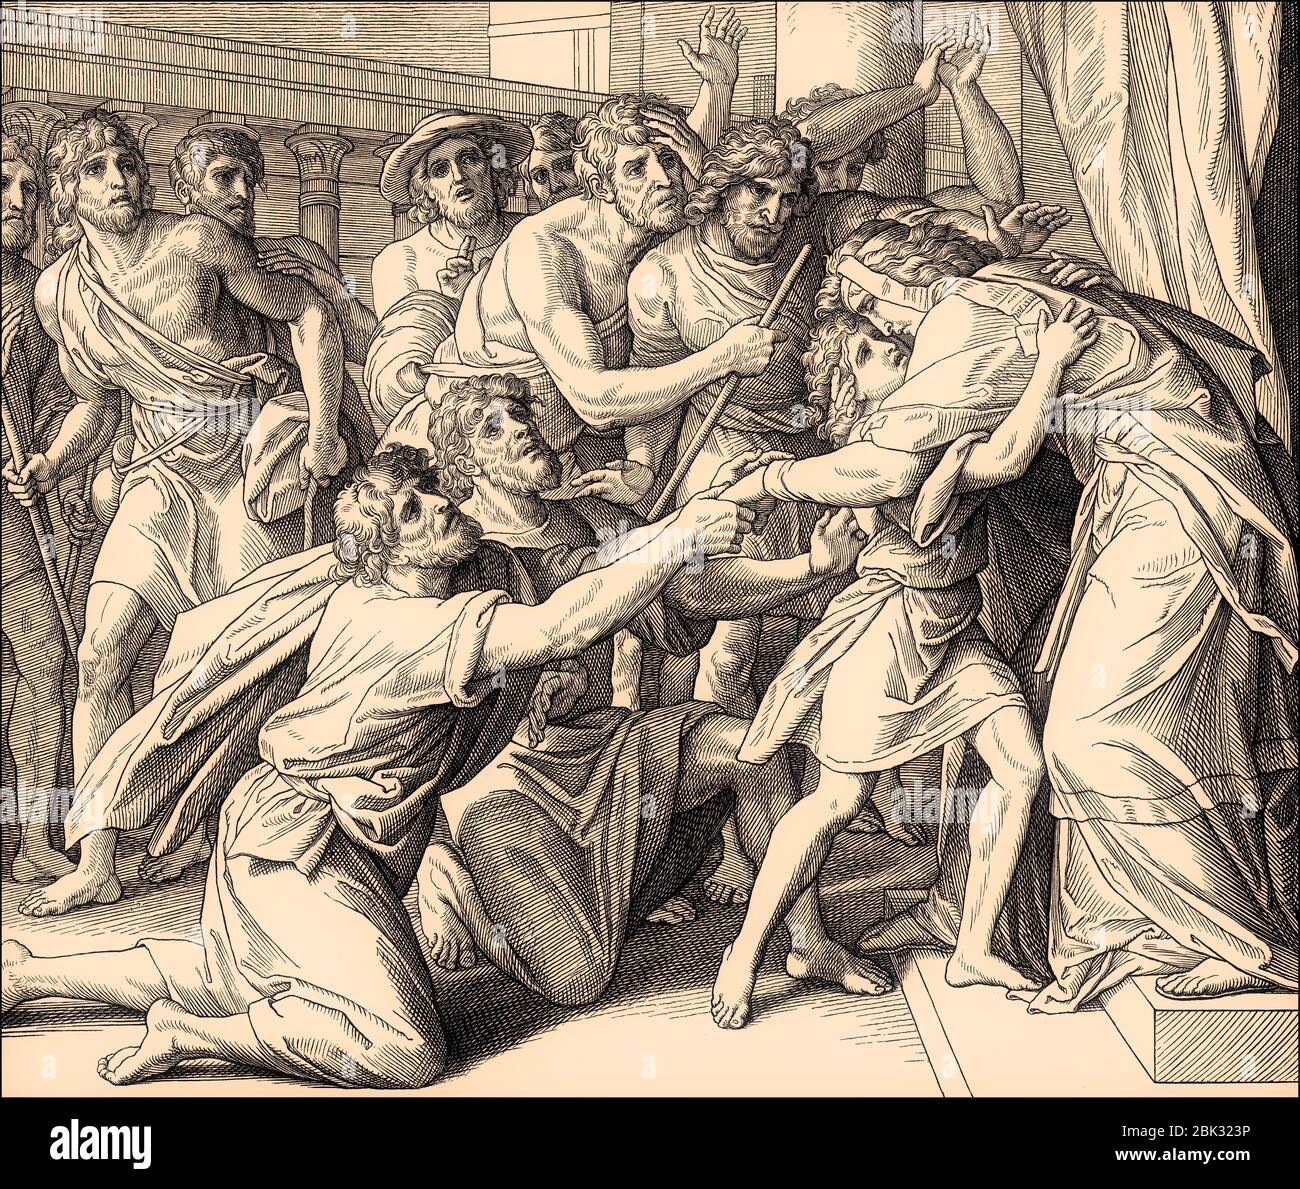 Joseph se révèle à ses frères, par Julius Schnorr von Carolsfeld, 1860 Banque D'Images